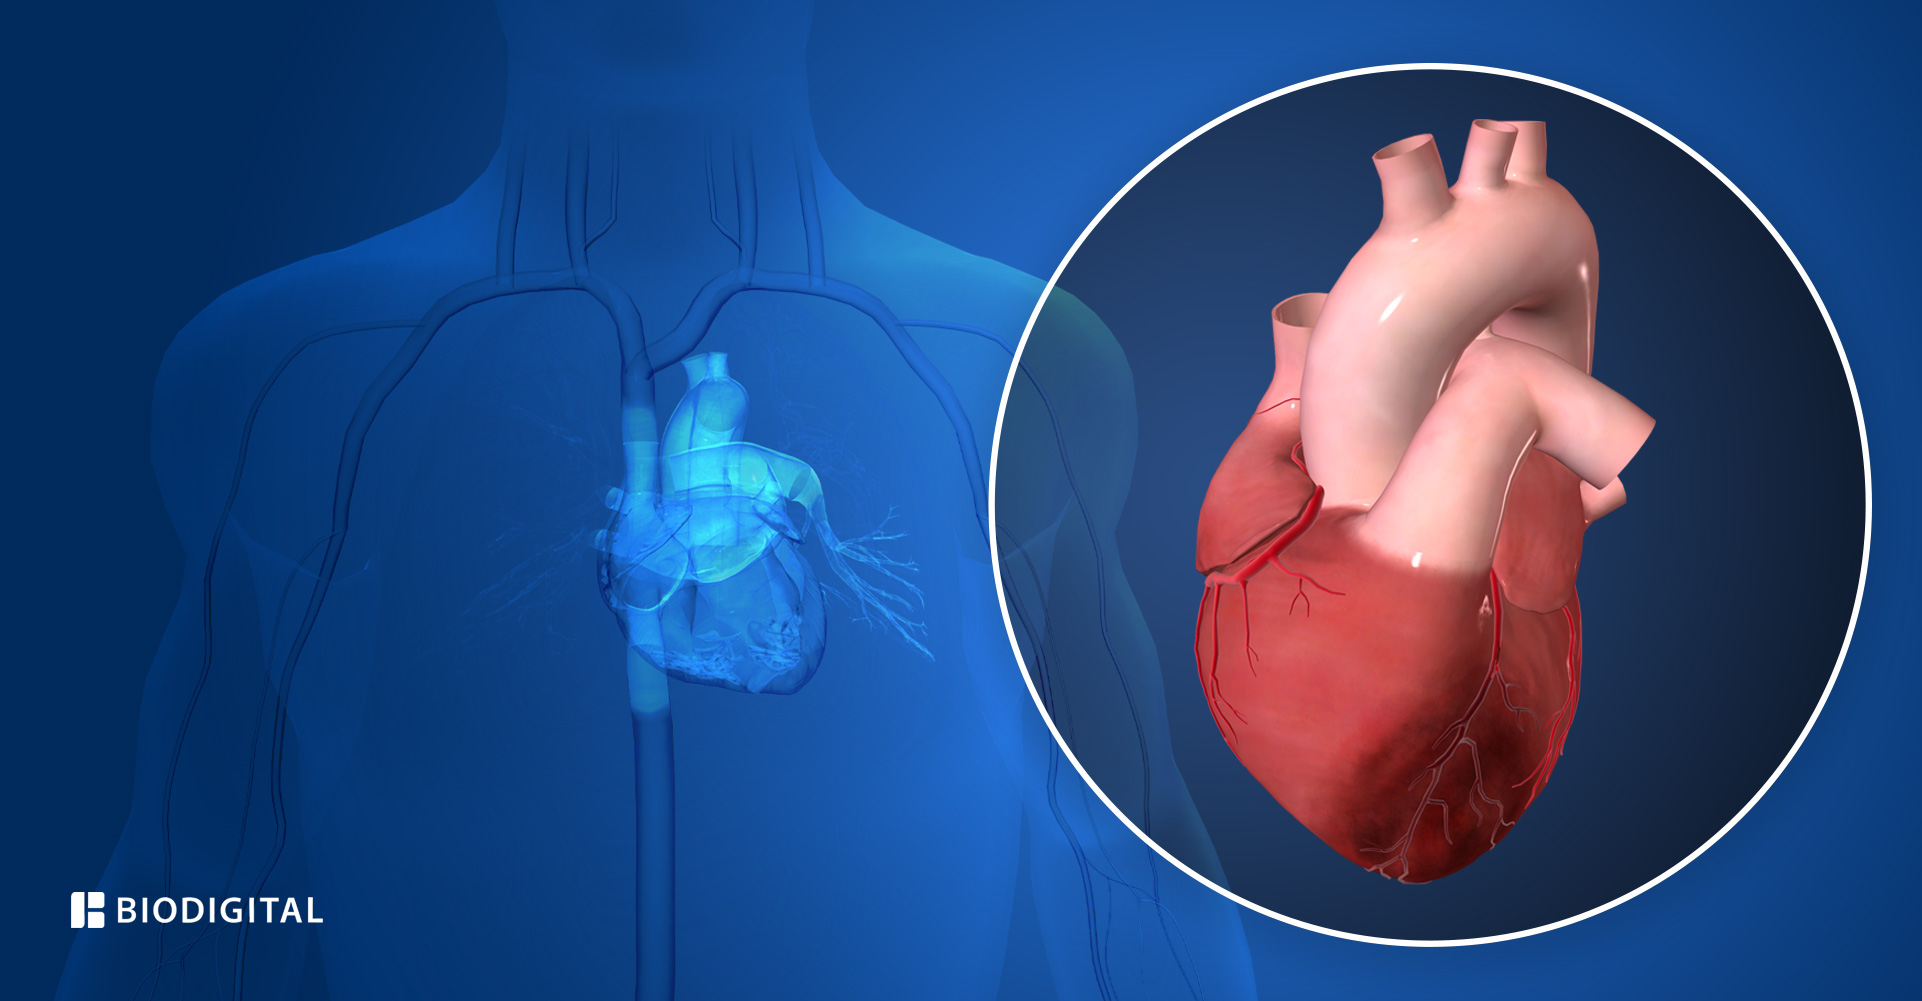 Verschillende oorzaken van hartaanvallen die belangrijk zijn om te weten